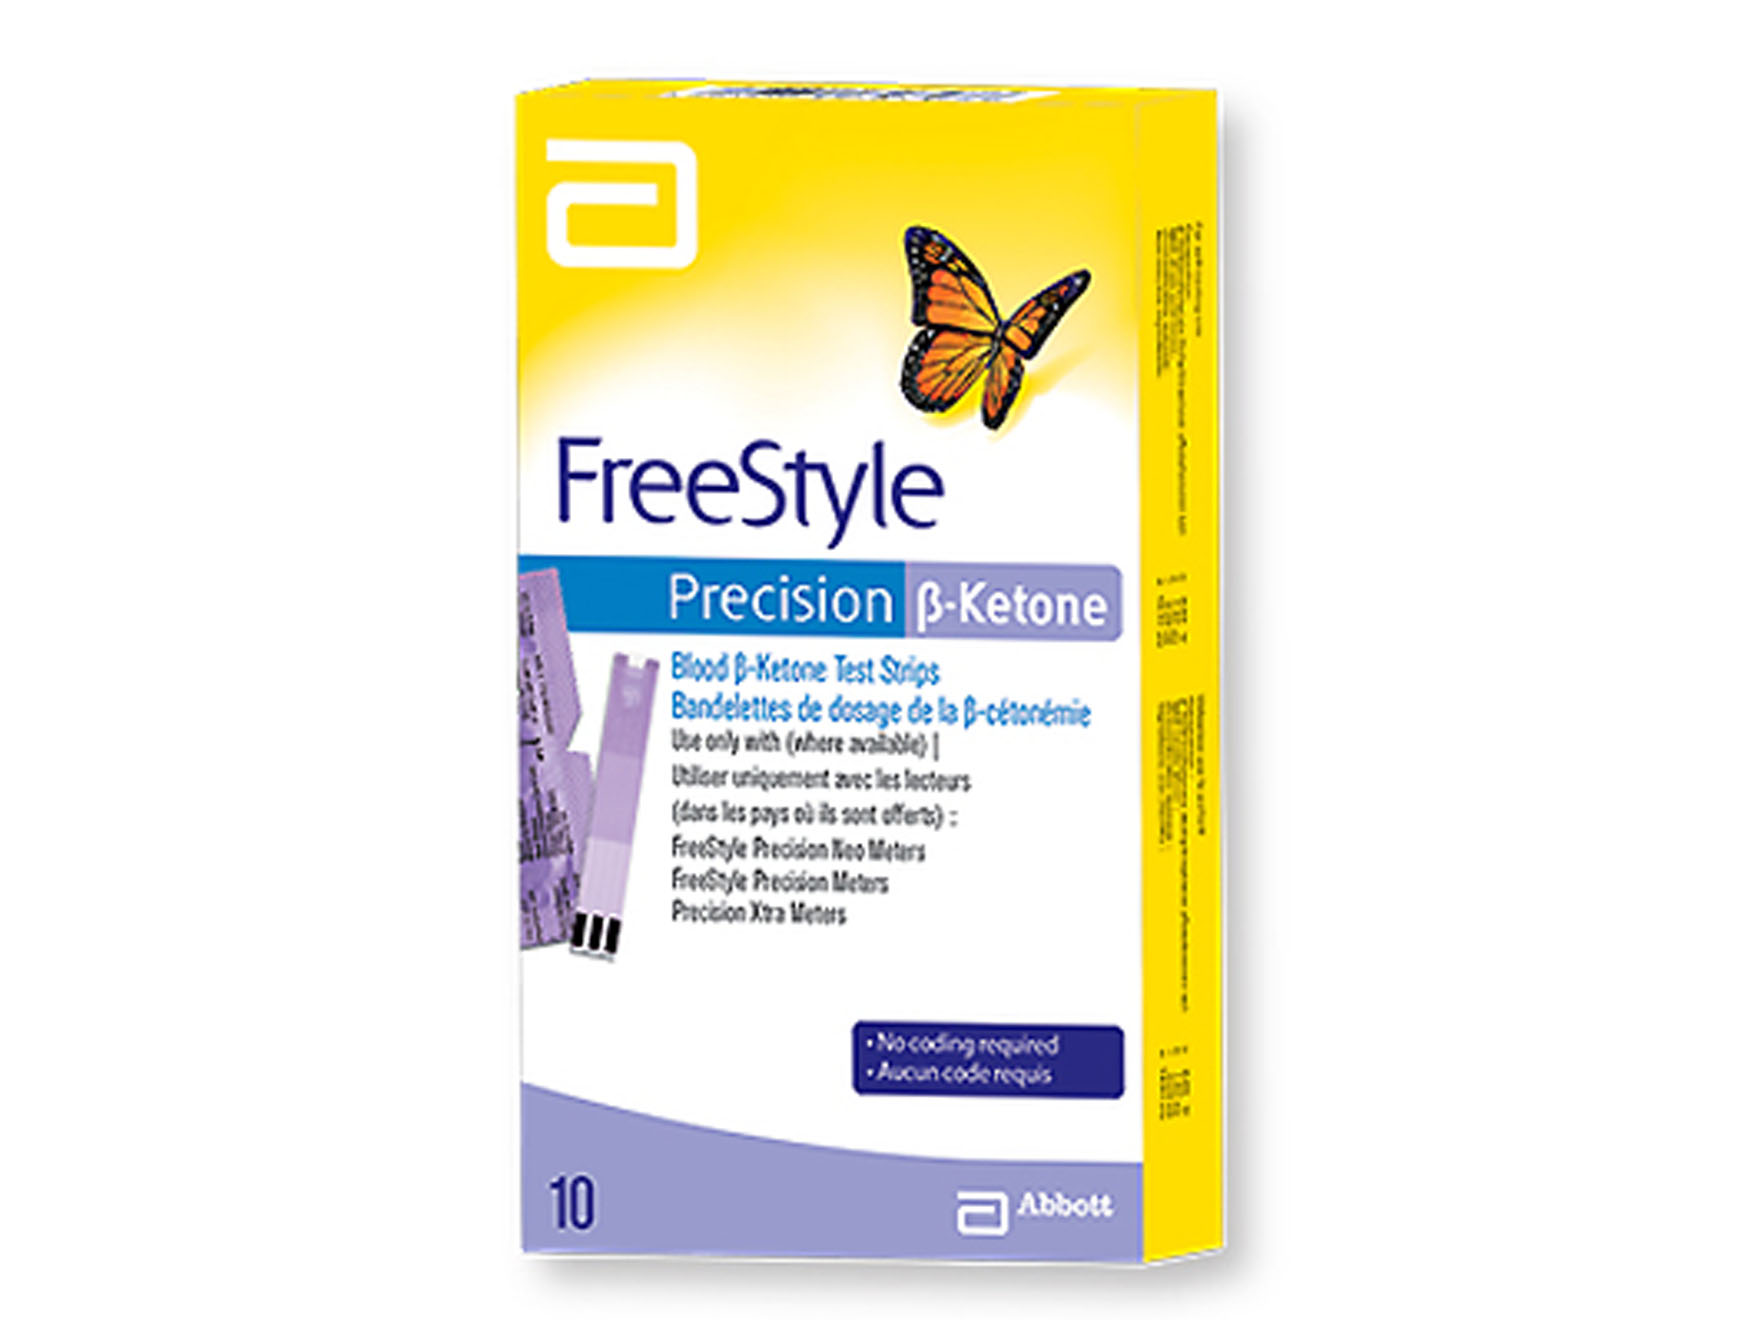 Tigettes FreeStyle precision B-ketone - 10 pcs